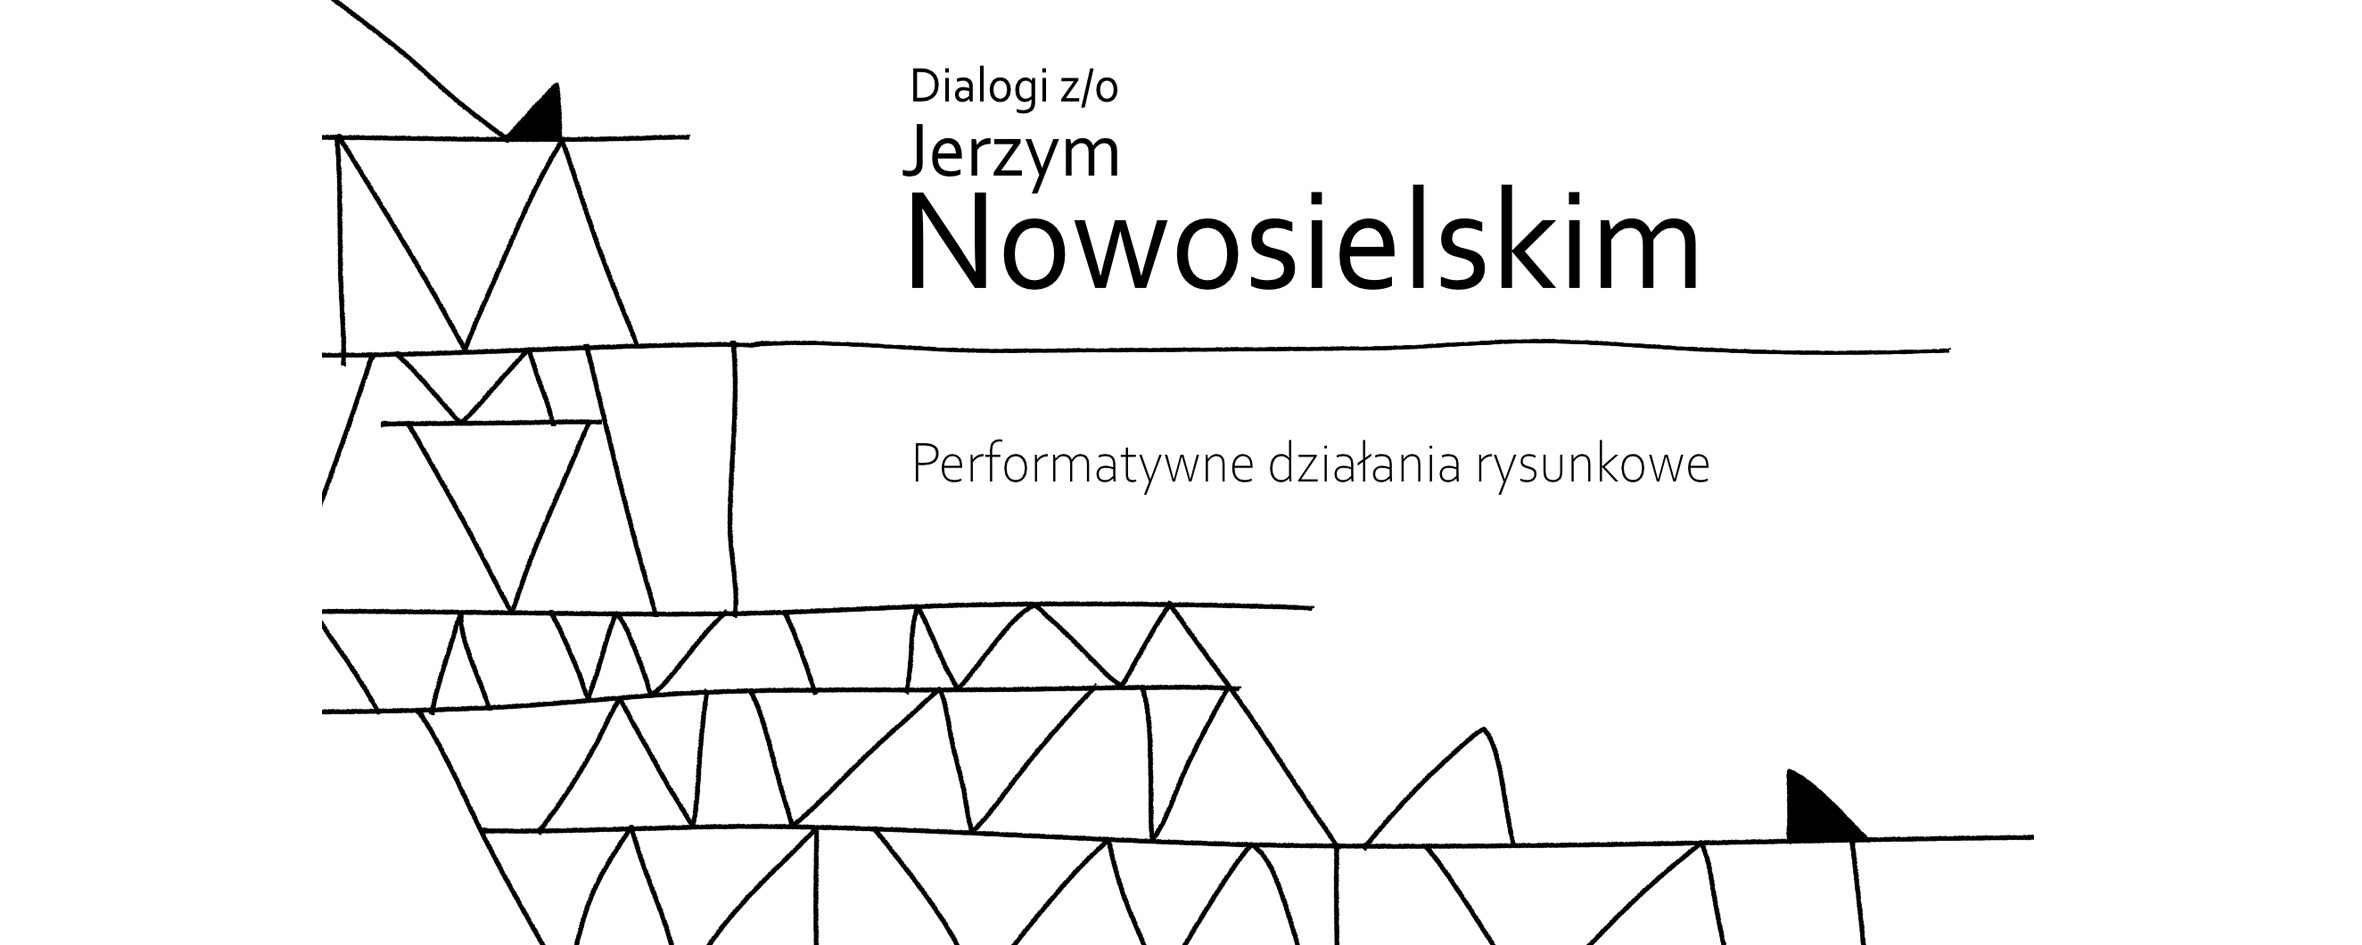 Dialogi z/o Jerzym Nowosielskim